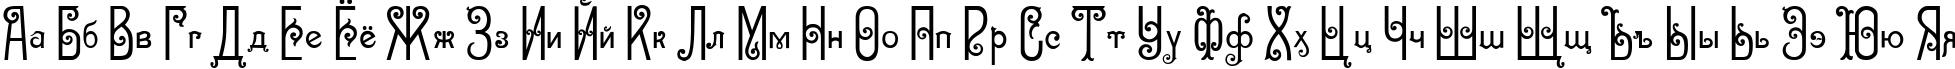 Пример написания русского алфавита шрифтом Sevilla Decor